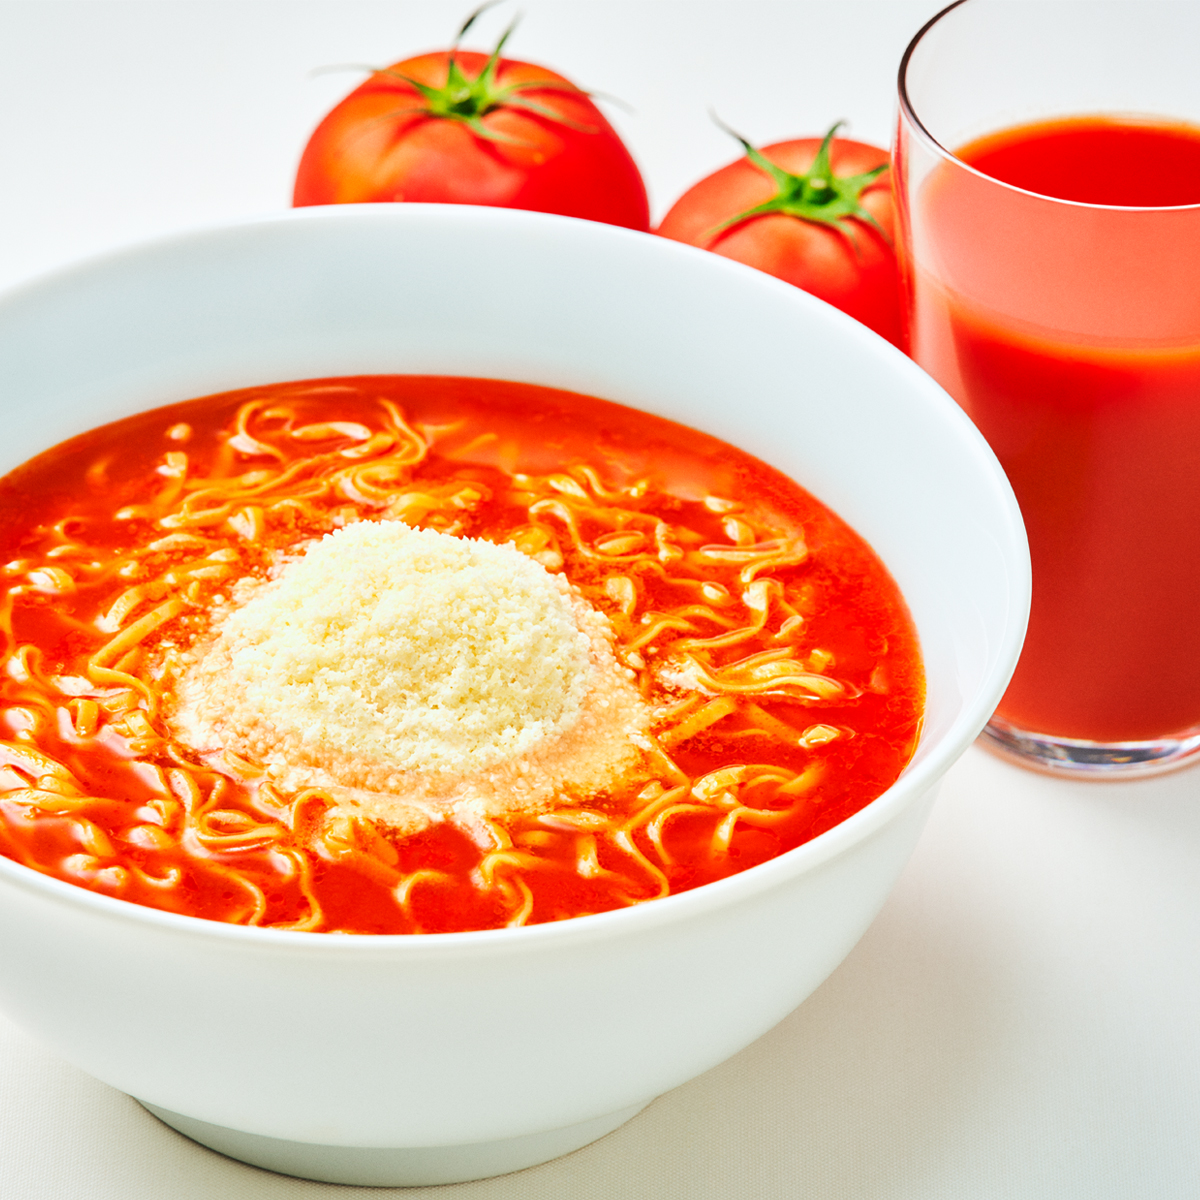 「トマトとチーズ使ったら、
だいたいイタリアンっぽくなるんですよ。 」|チキンラーメン ひよこちゃんのイラスト